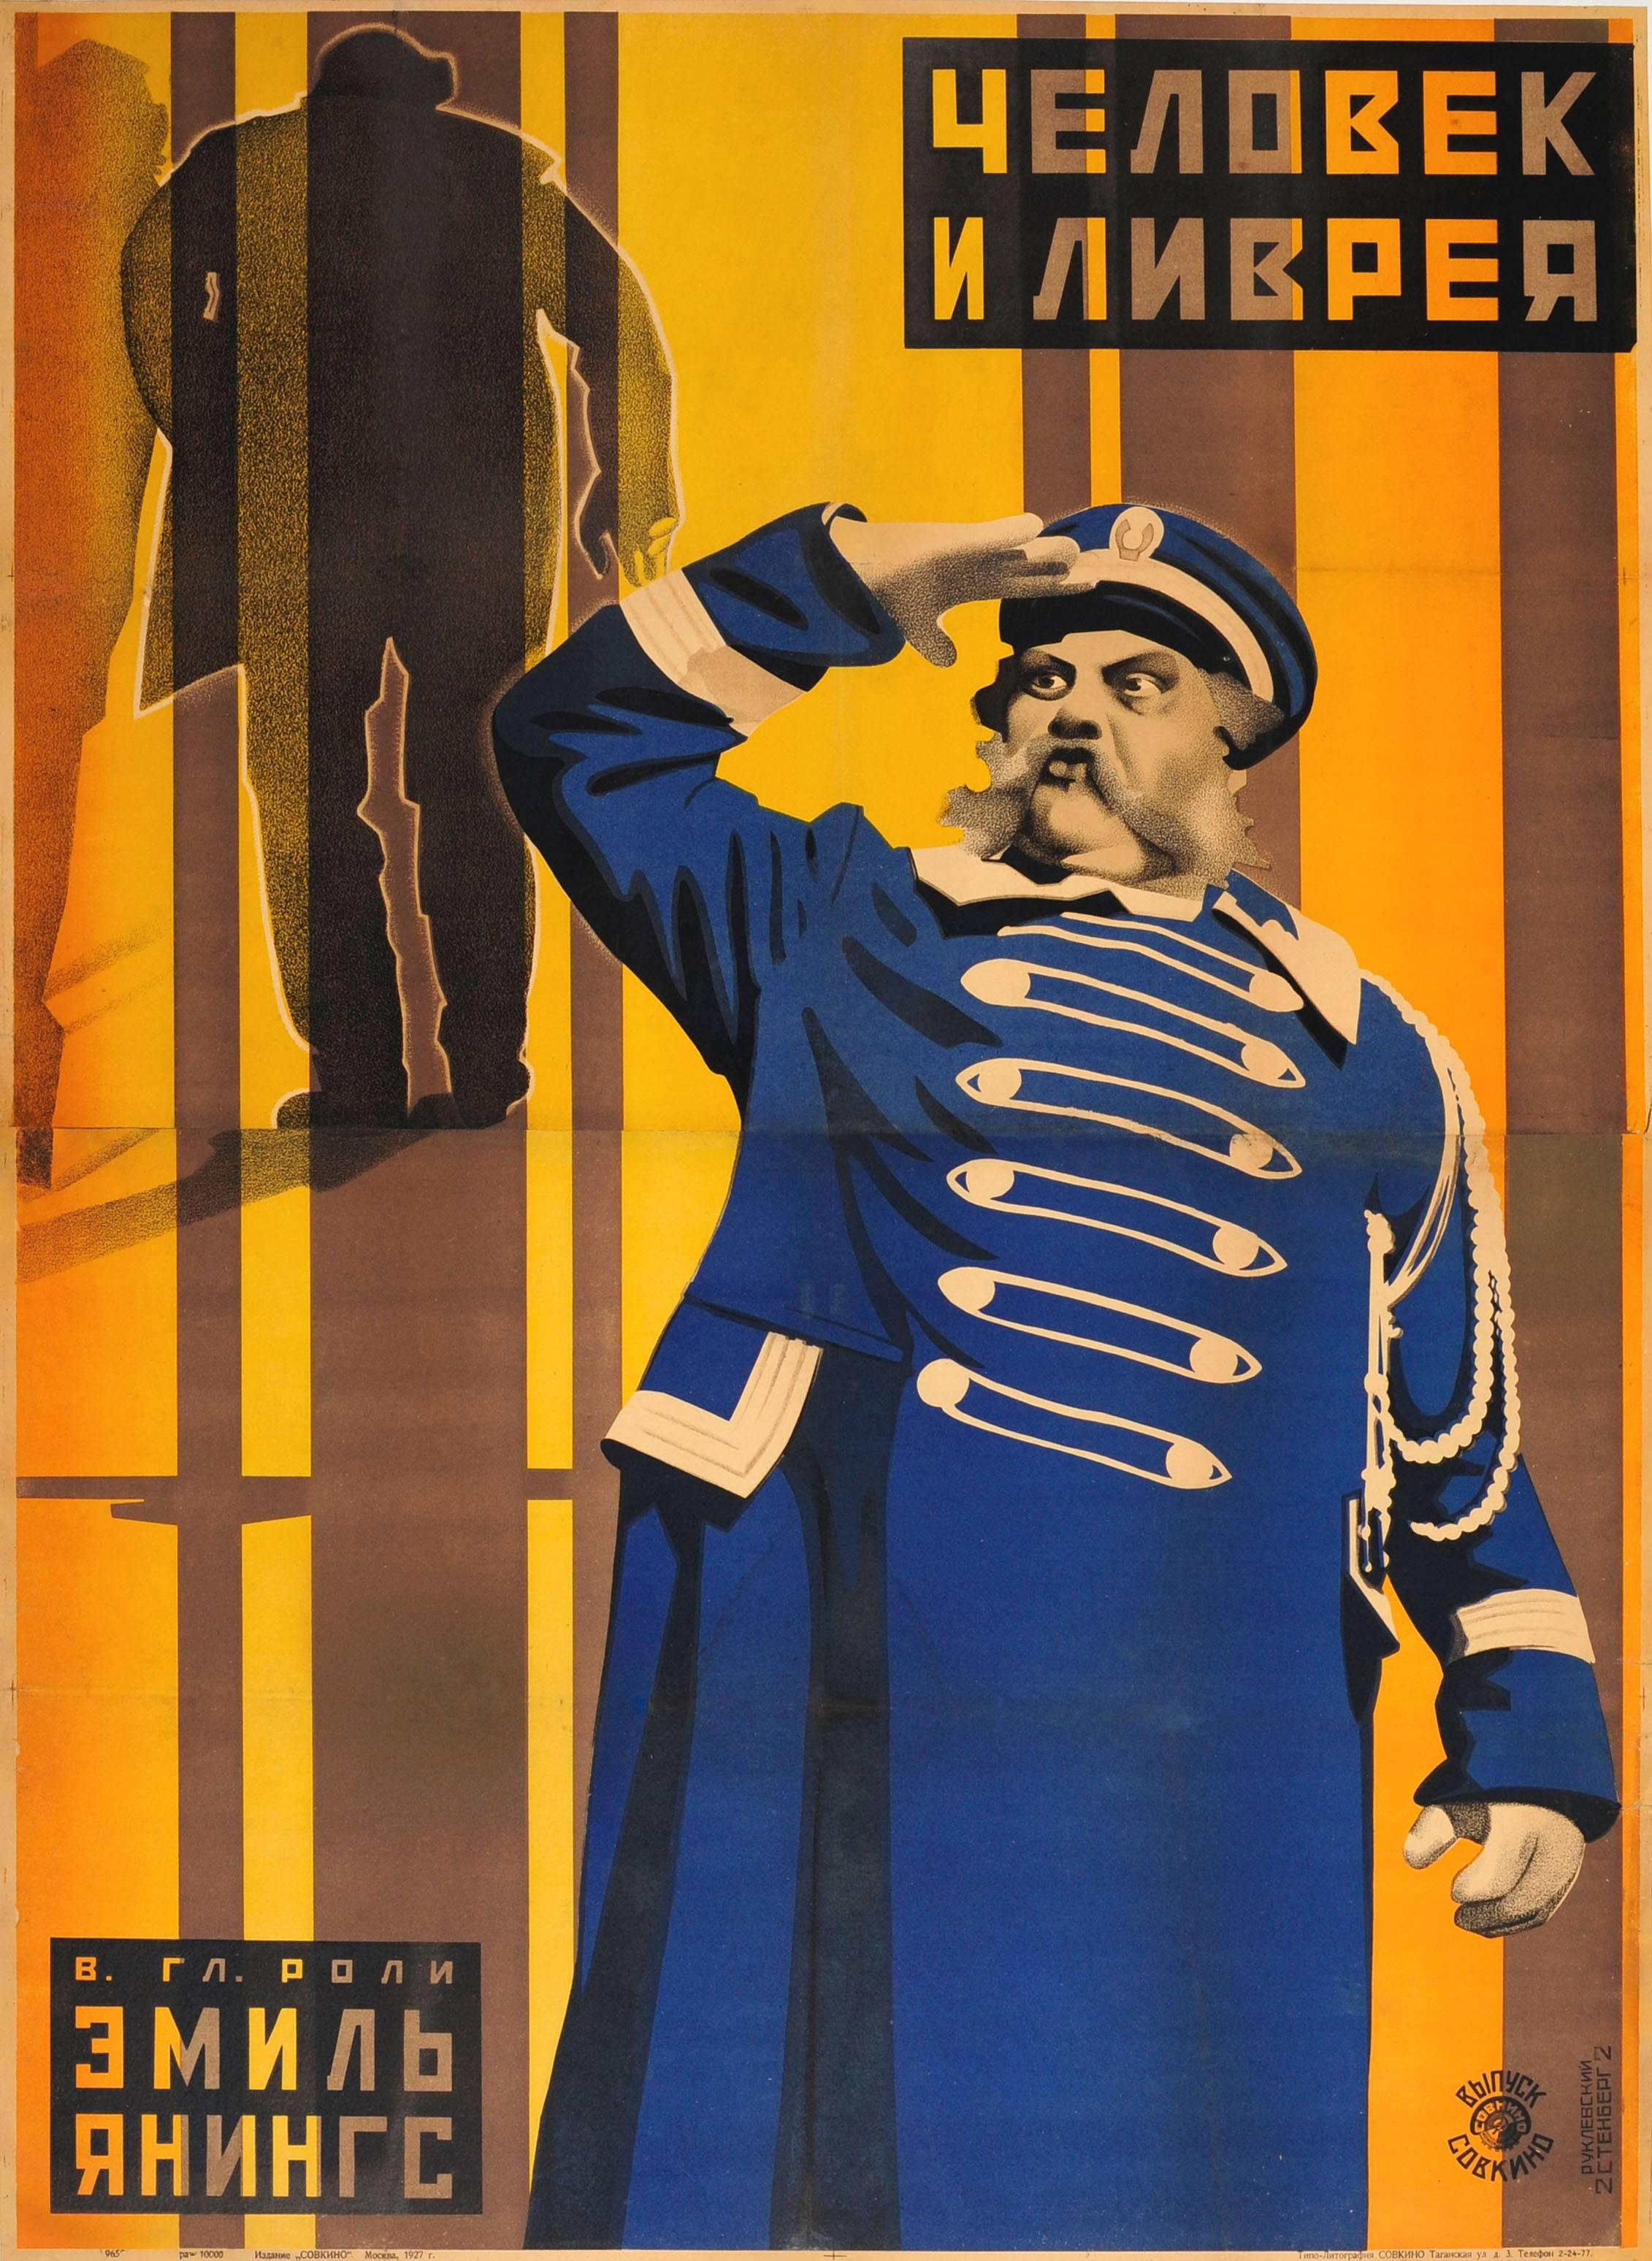 Affiche originale du film constructiviste soviétique Der Letzte Mann, La dernière rigueur, 1927